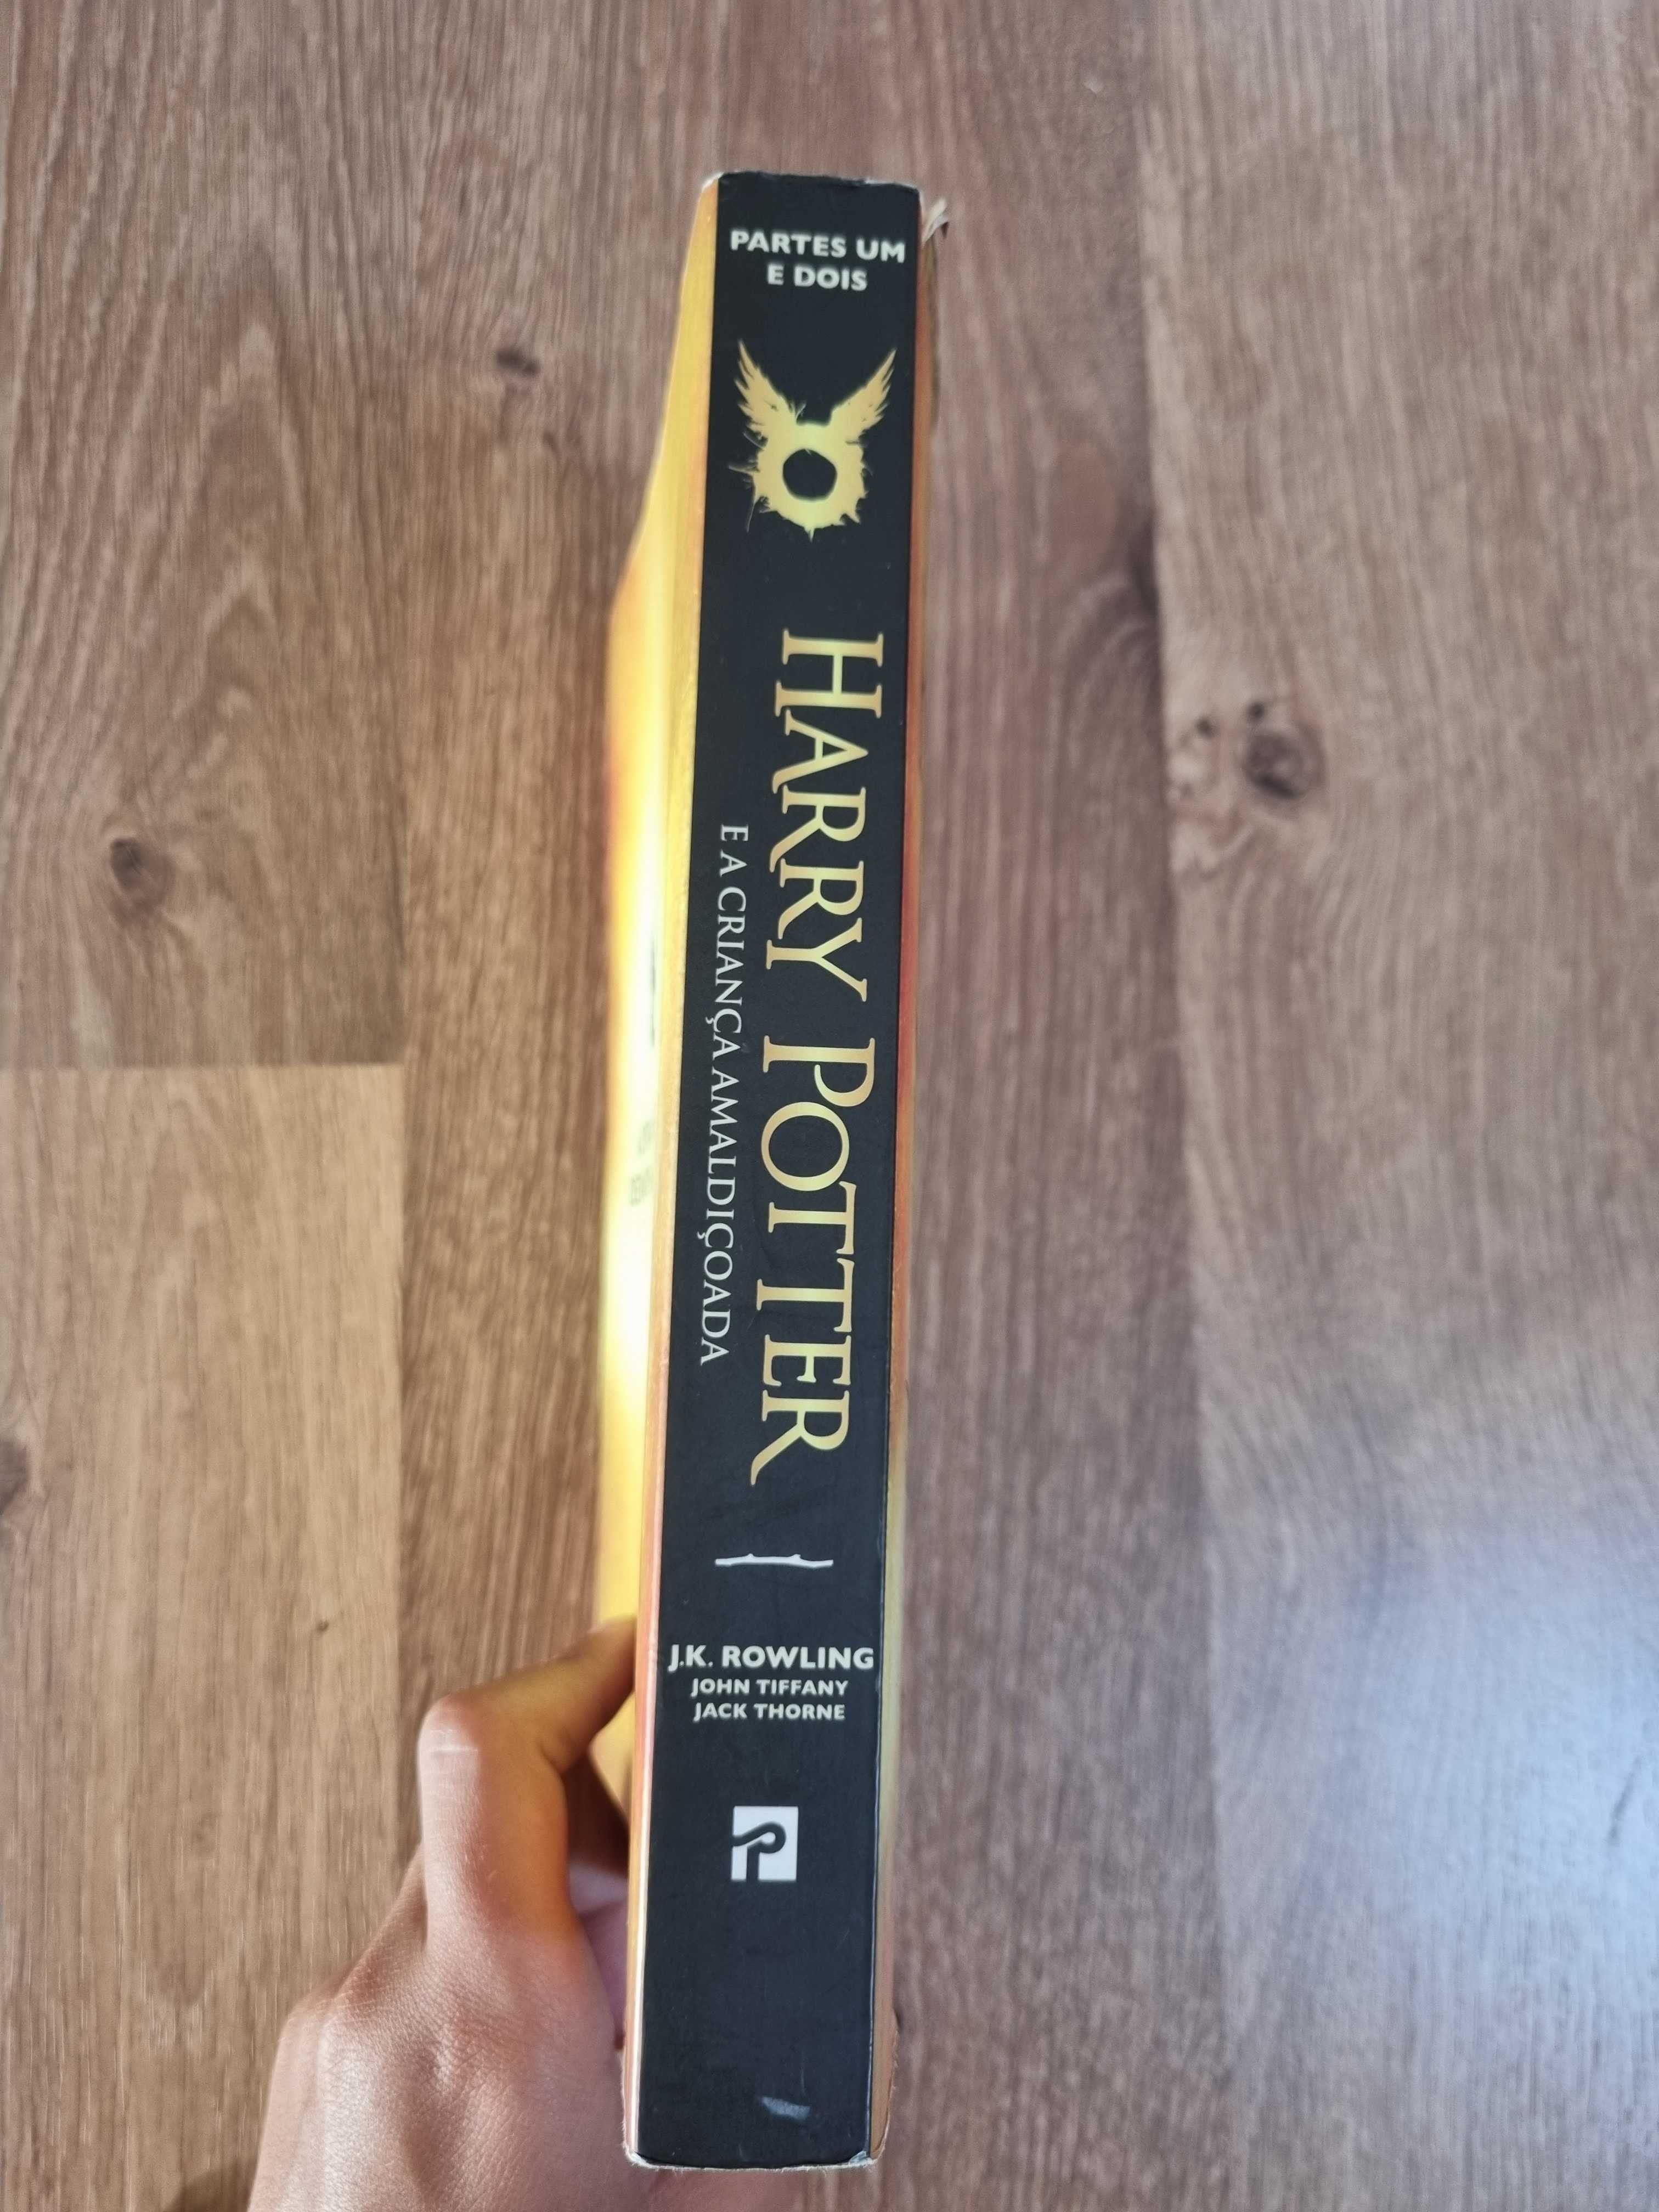 Livro "Harry Potter e a Criança Amaldiçoada"